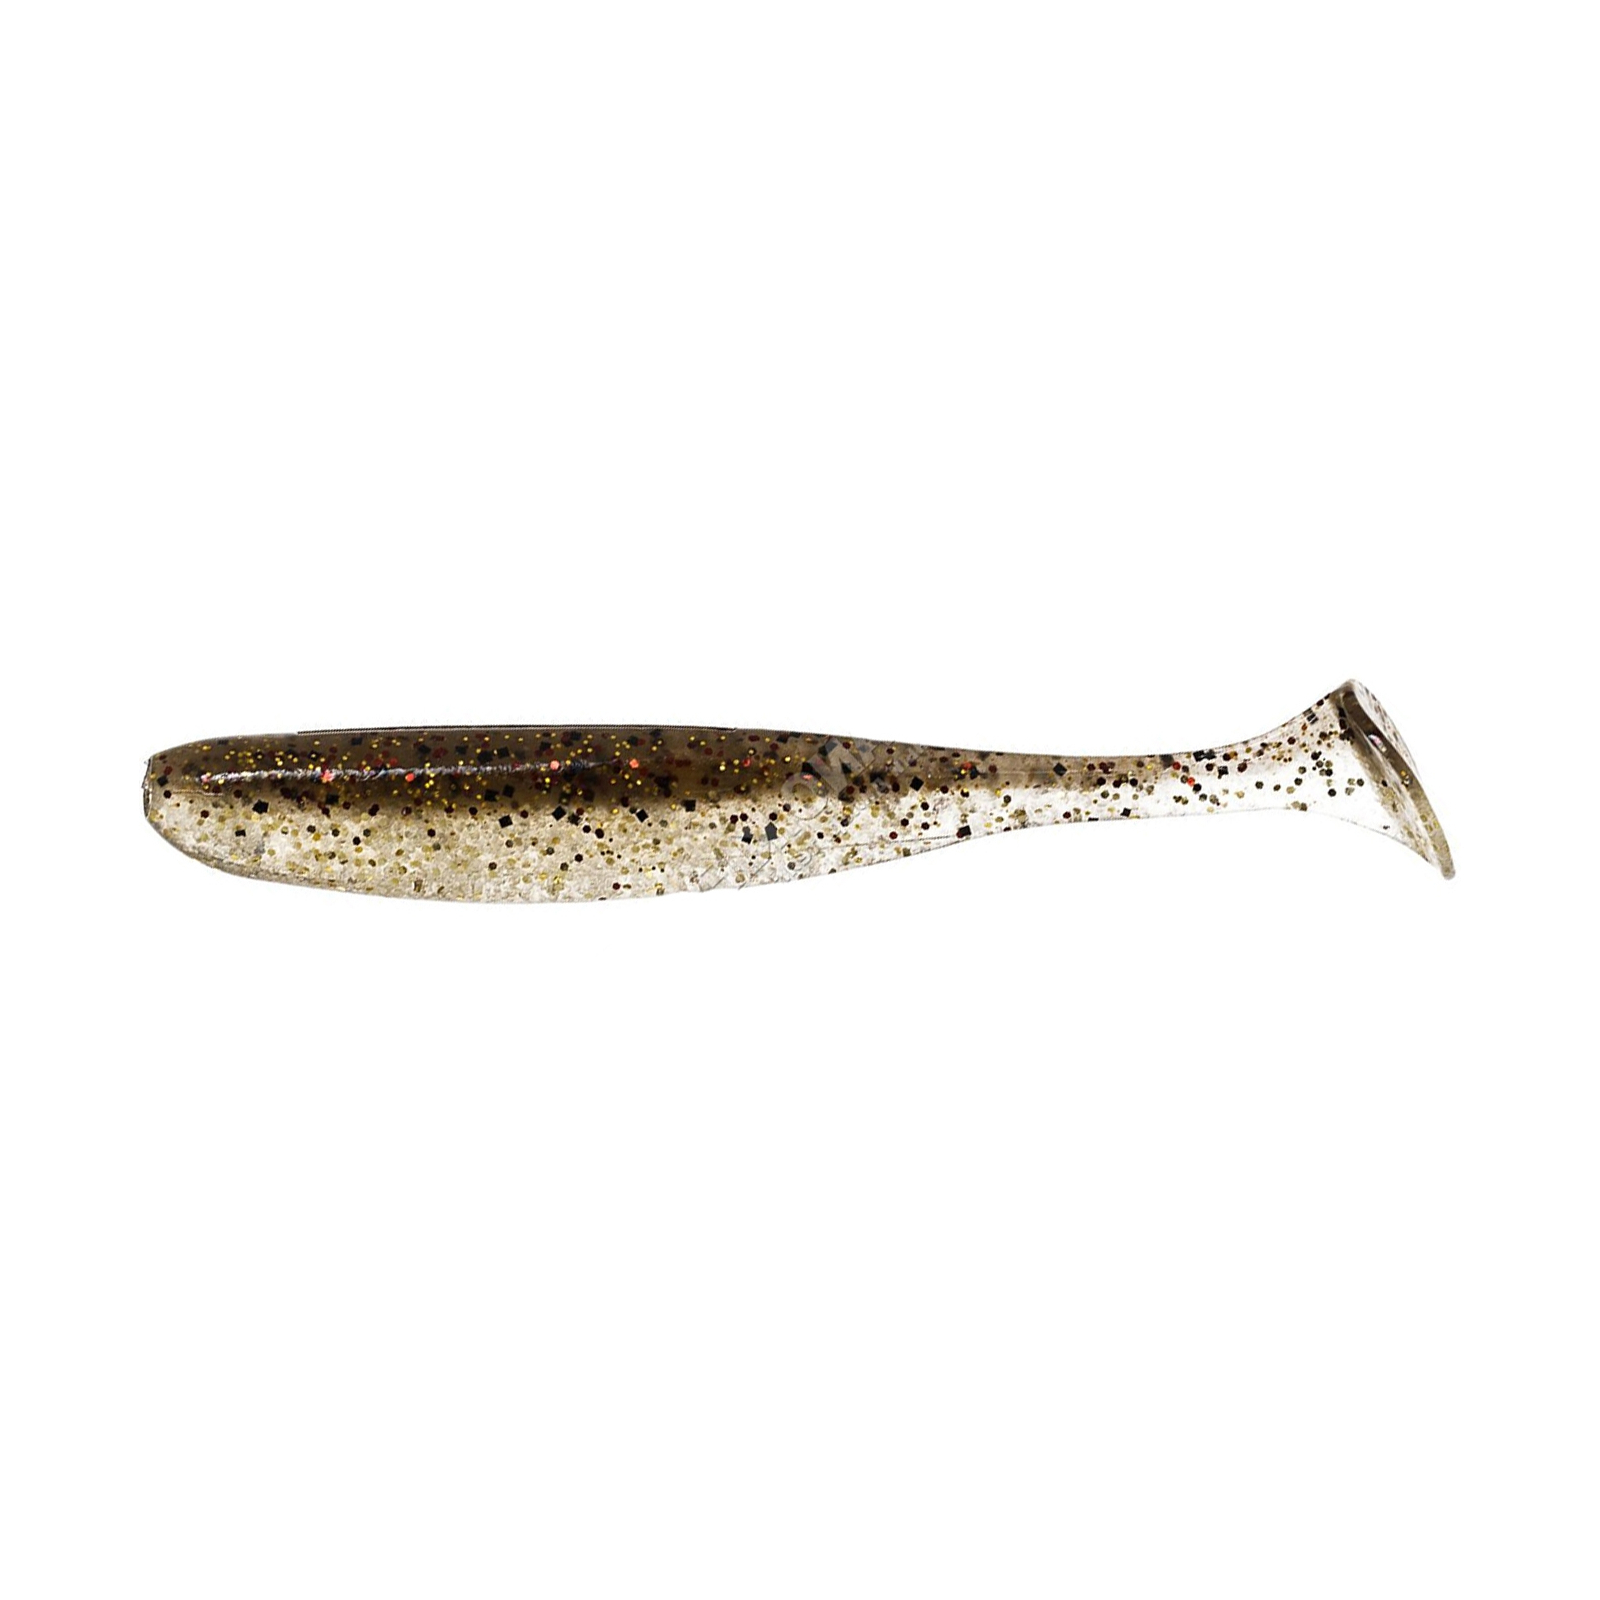 Силикон рыболовный Keitech Easy Shiner 3" (10 шт/упак) ц:417 gold flash minnow (1551.10.30)